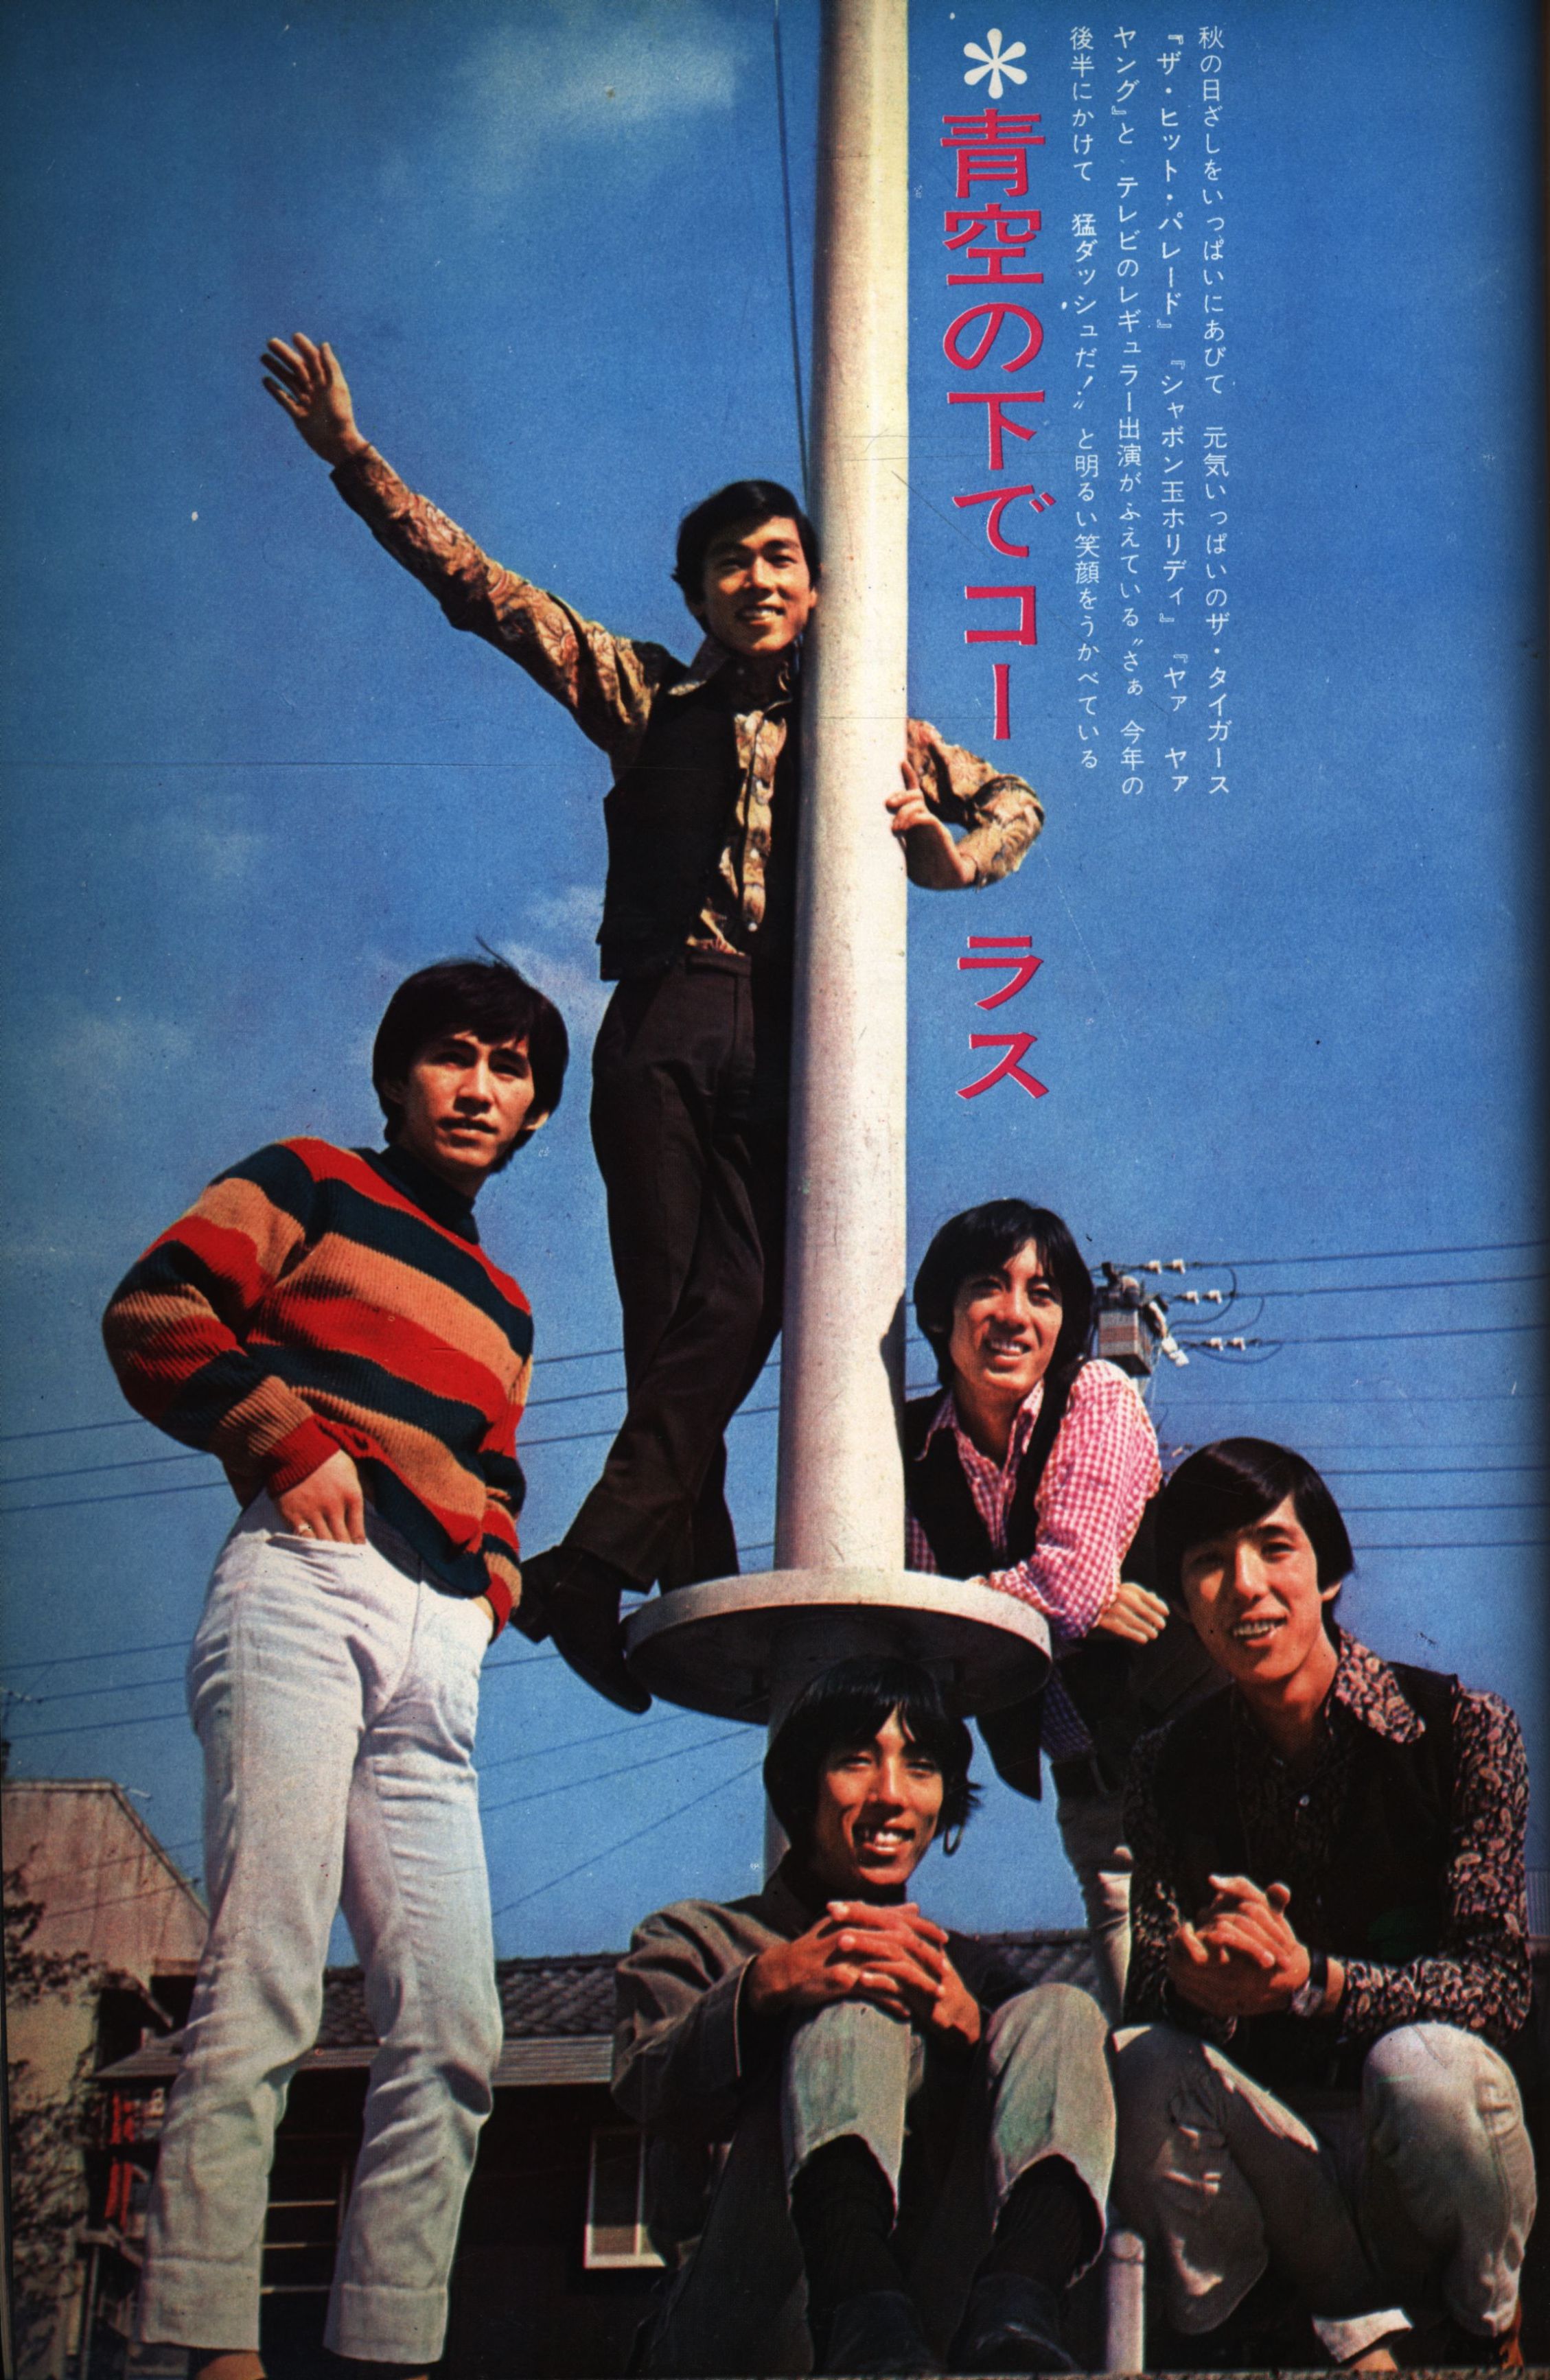 ザ・タイガース 1967年渡辺プロ発行 ソノシート付き写真集